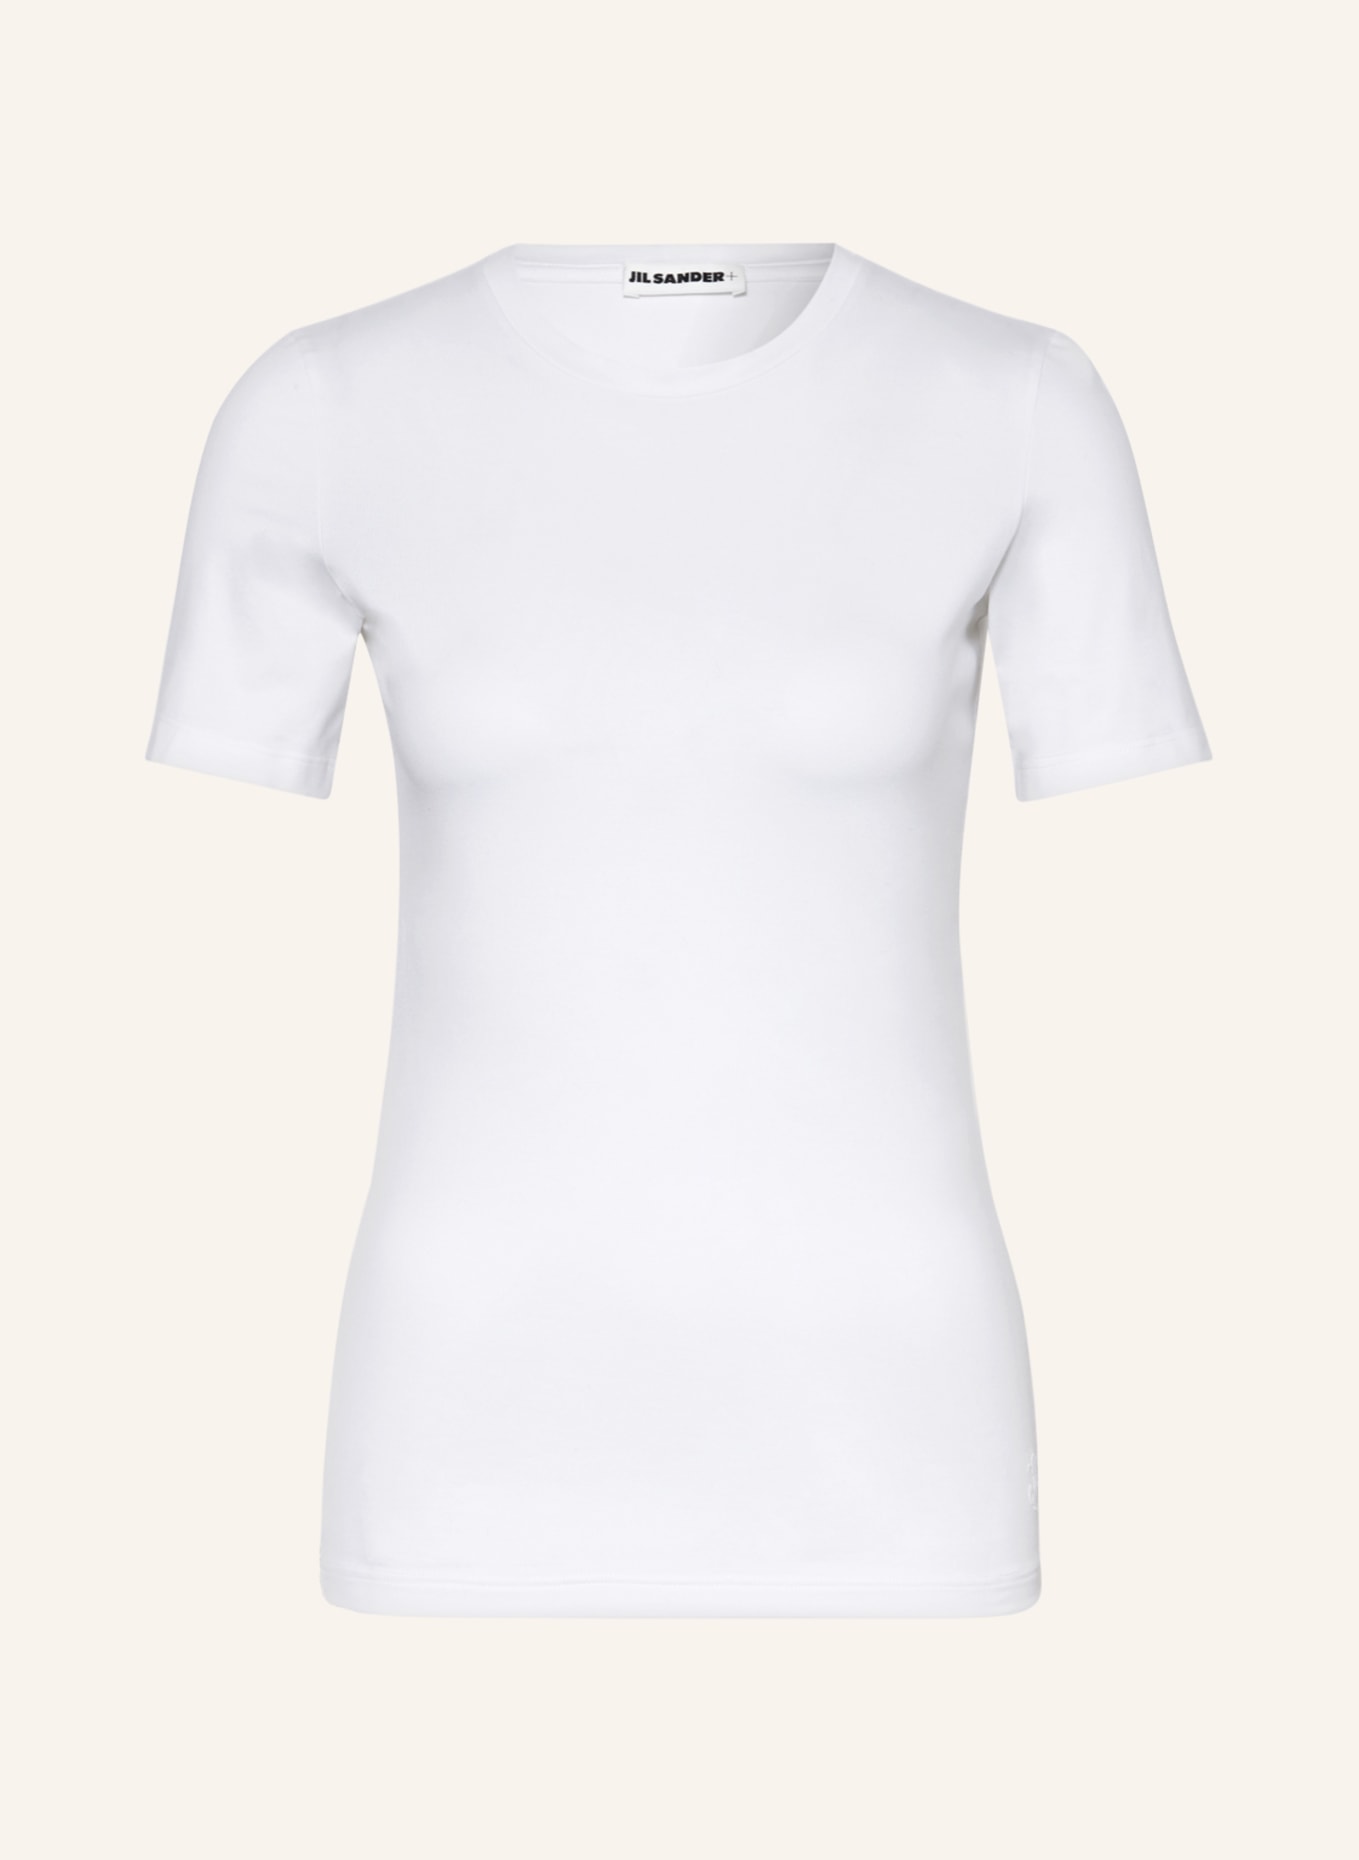 JIL SANDER T-Shirt, Farbe: WEISS (Bild 1)